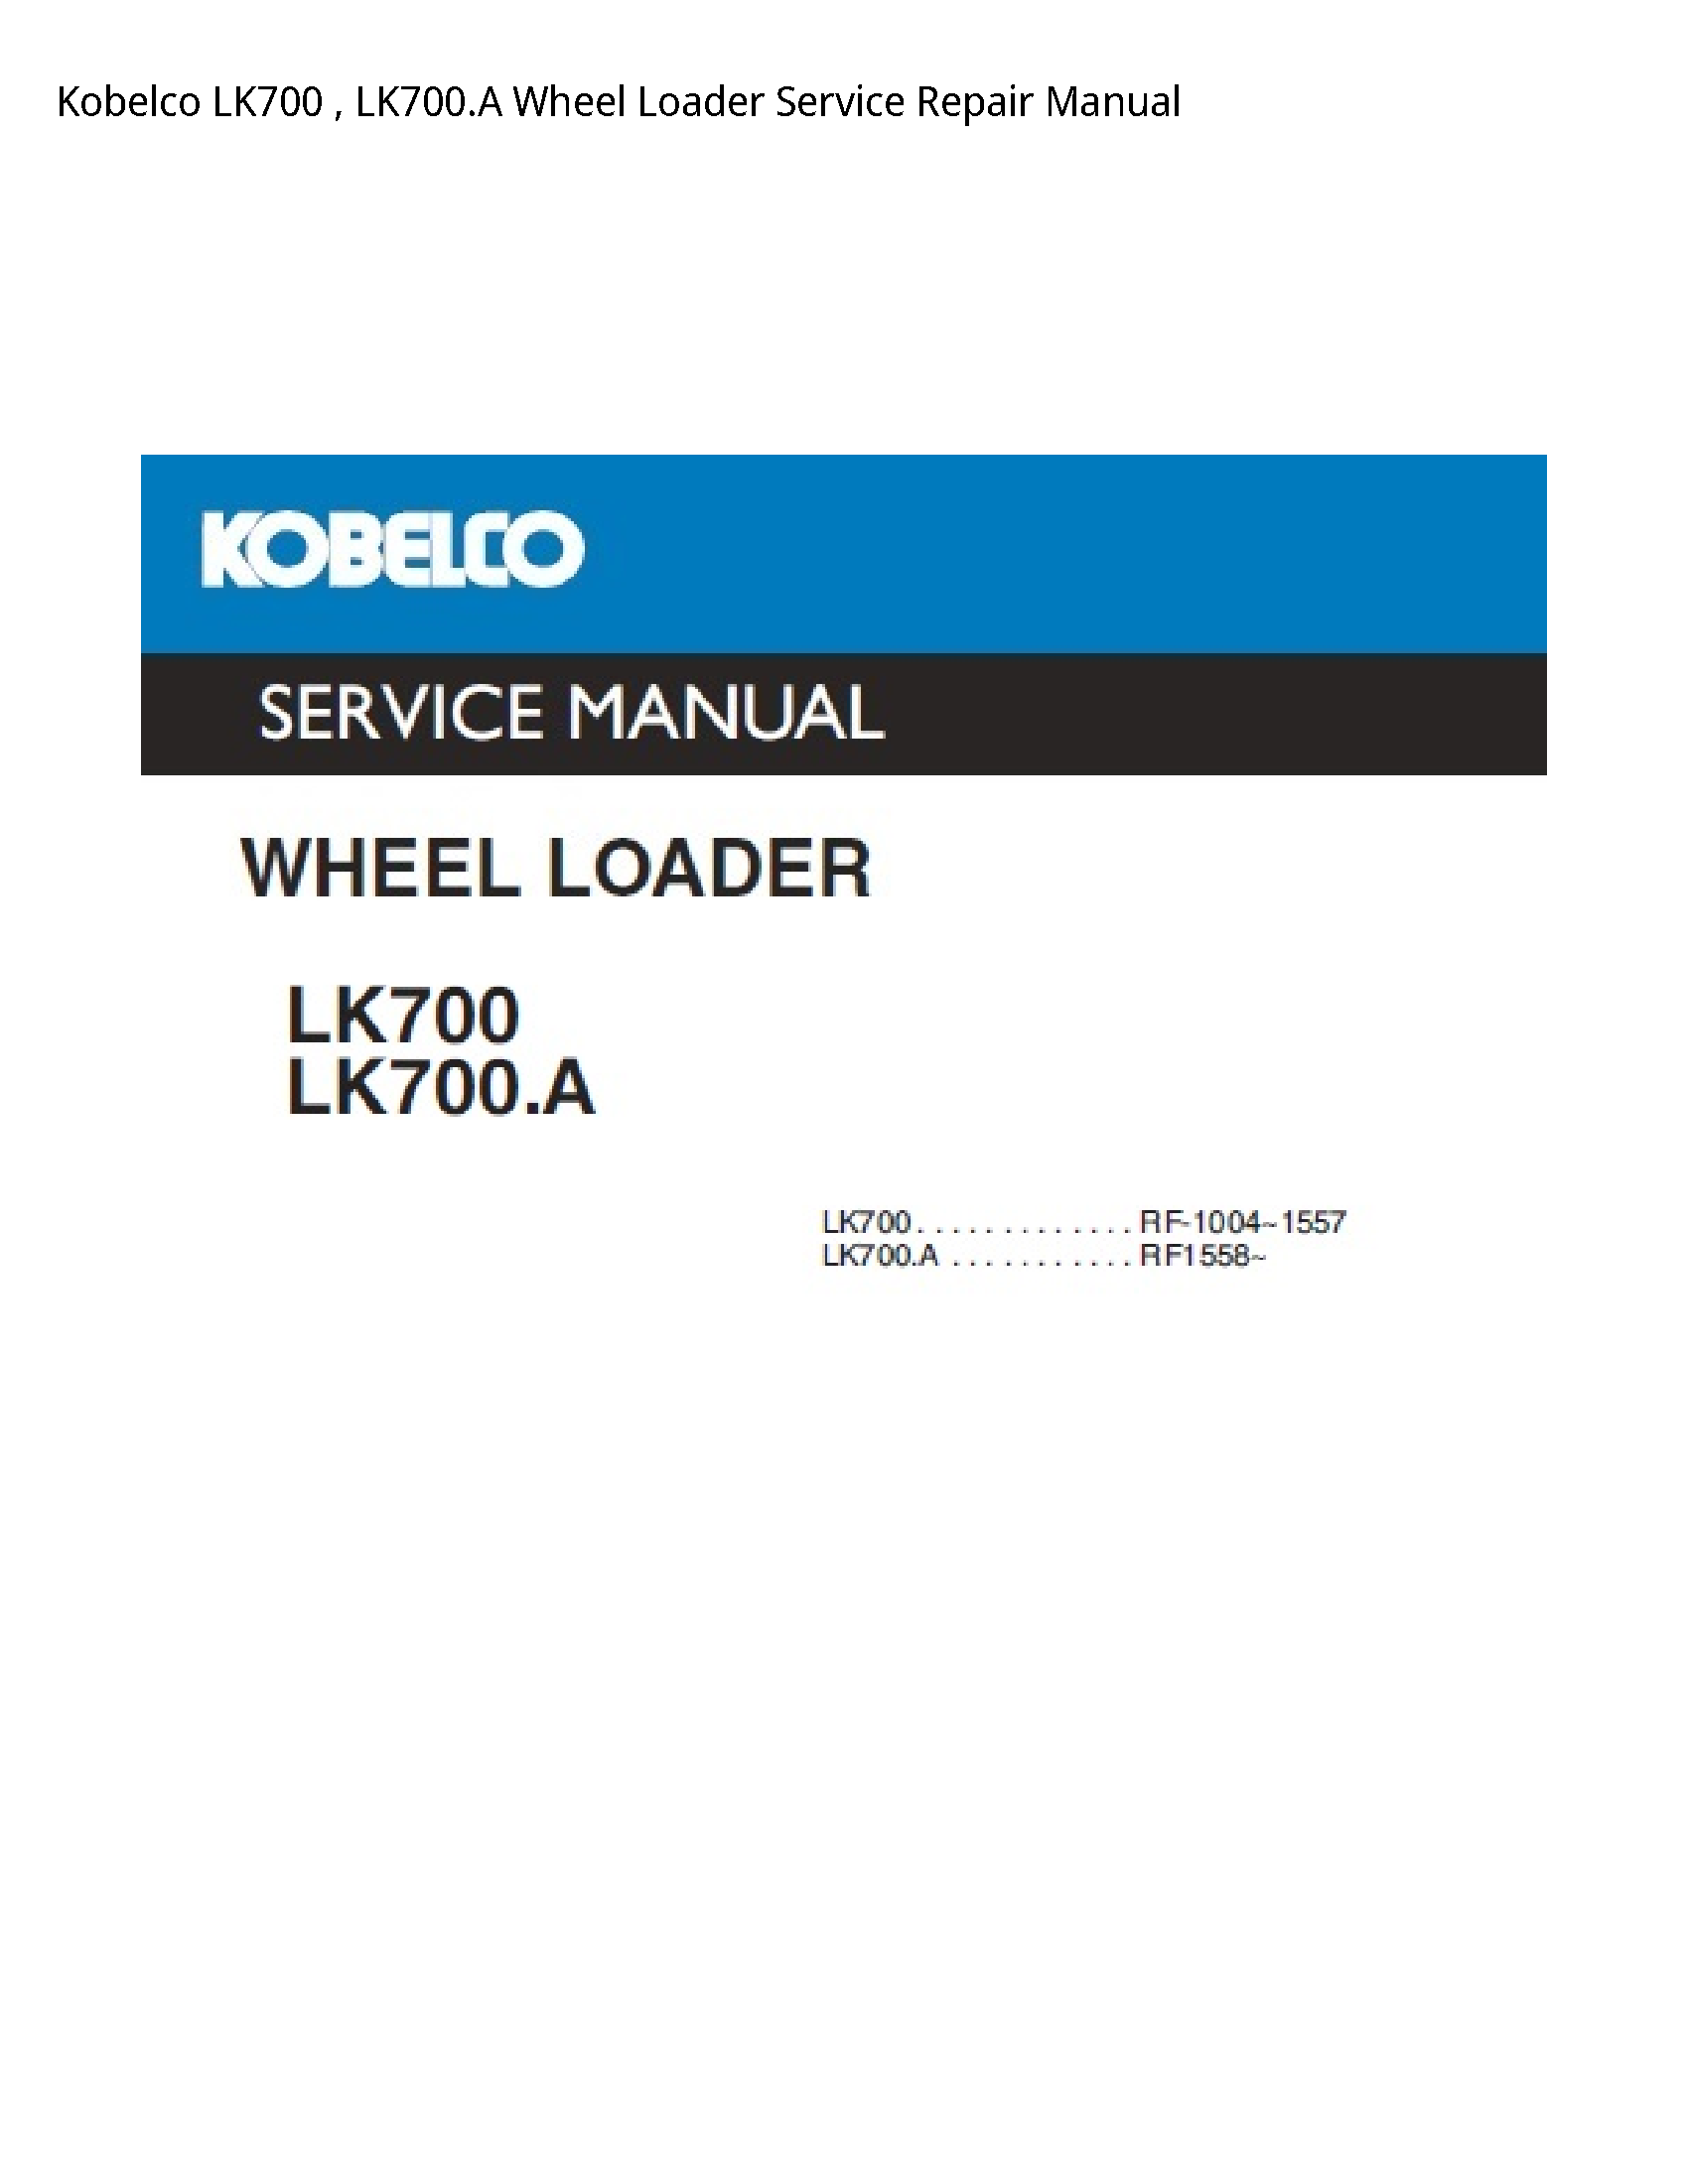 Kobelco LK700 Wheel Loader manual